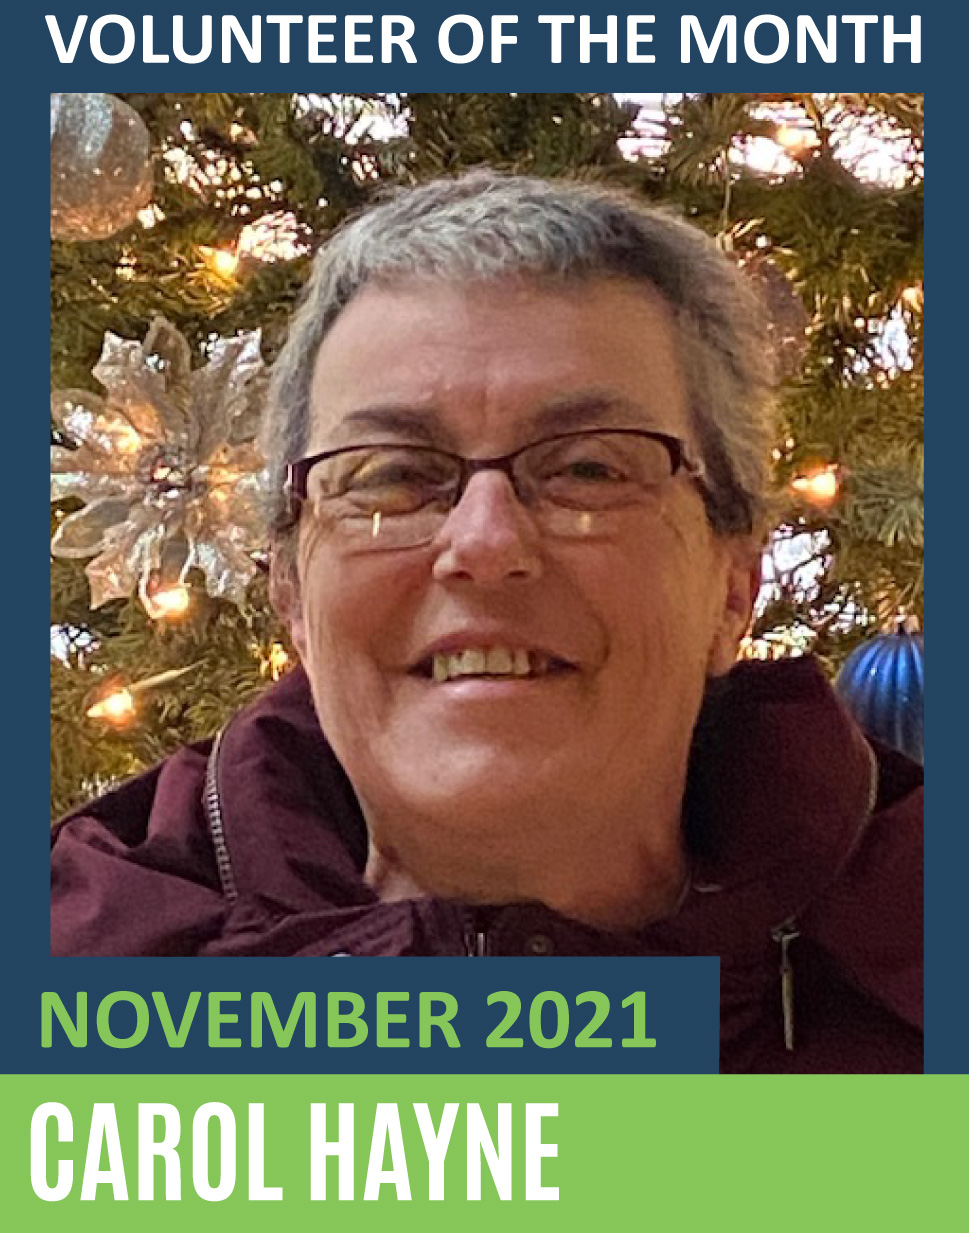 Carol Hayne   Volunteer of the Month   November 2021